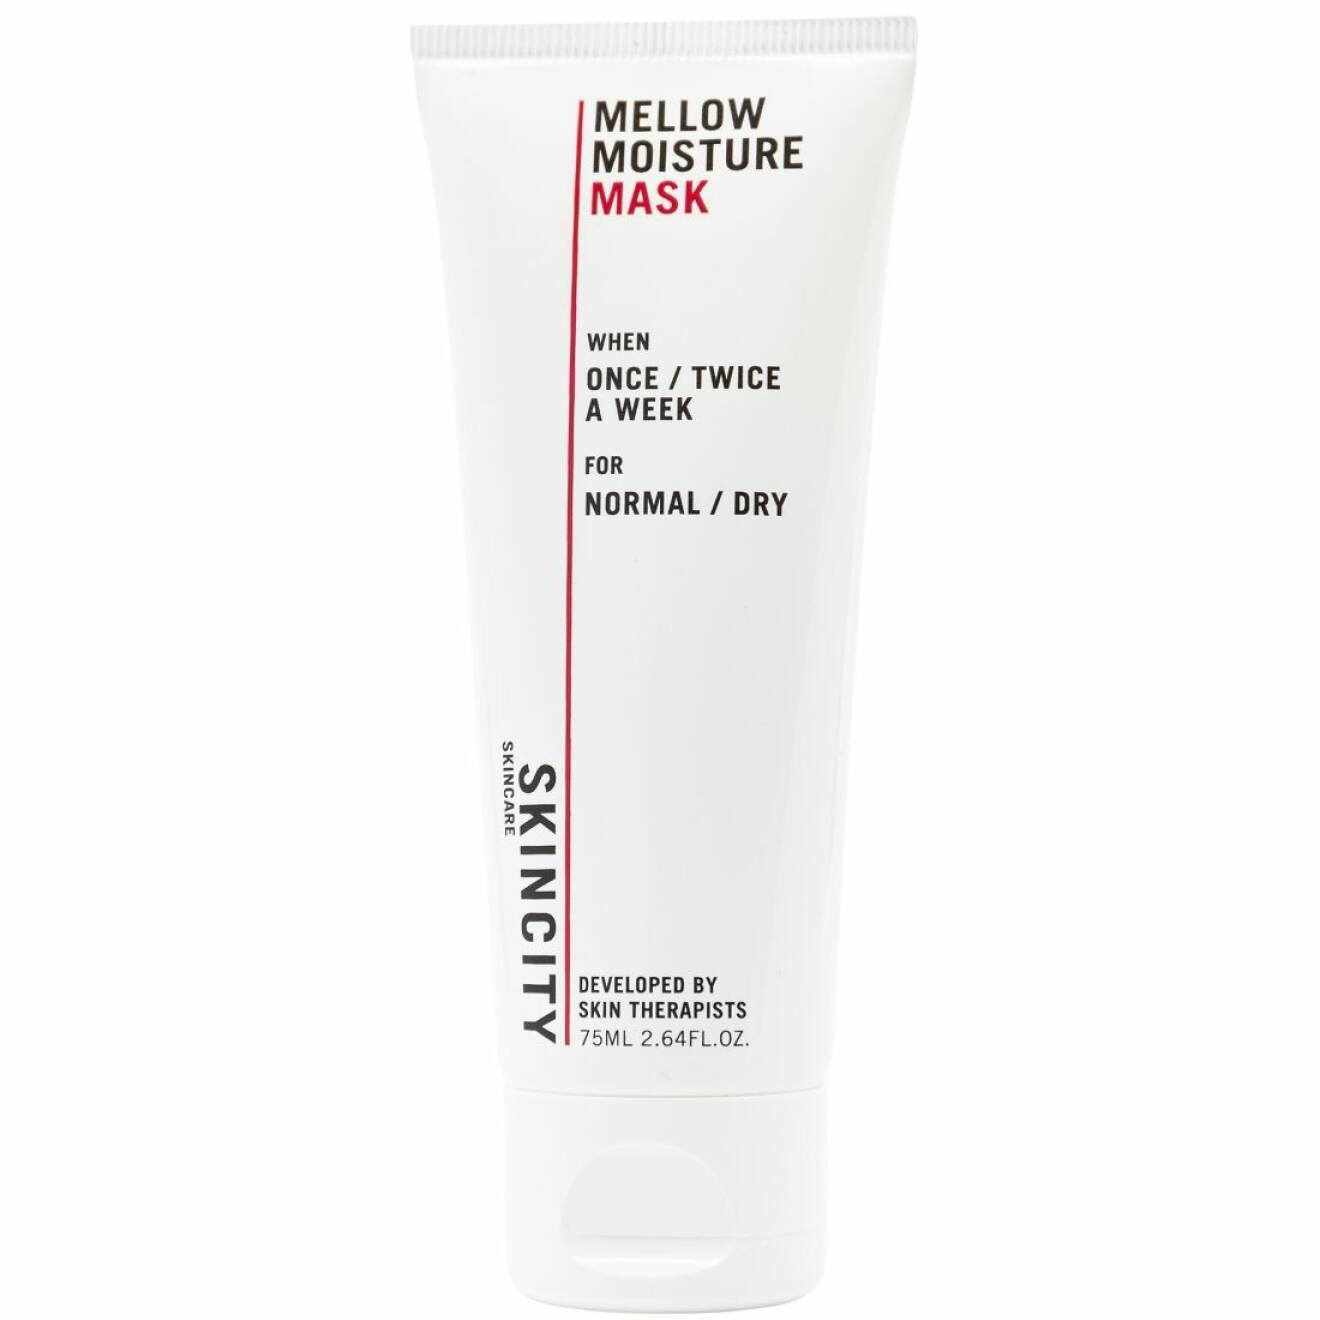 Mellow moisture mask från Skincity skincare är en favorit bland många av Beauty & Bubblors lyssnare.